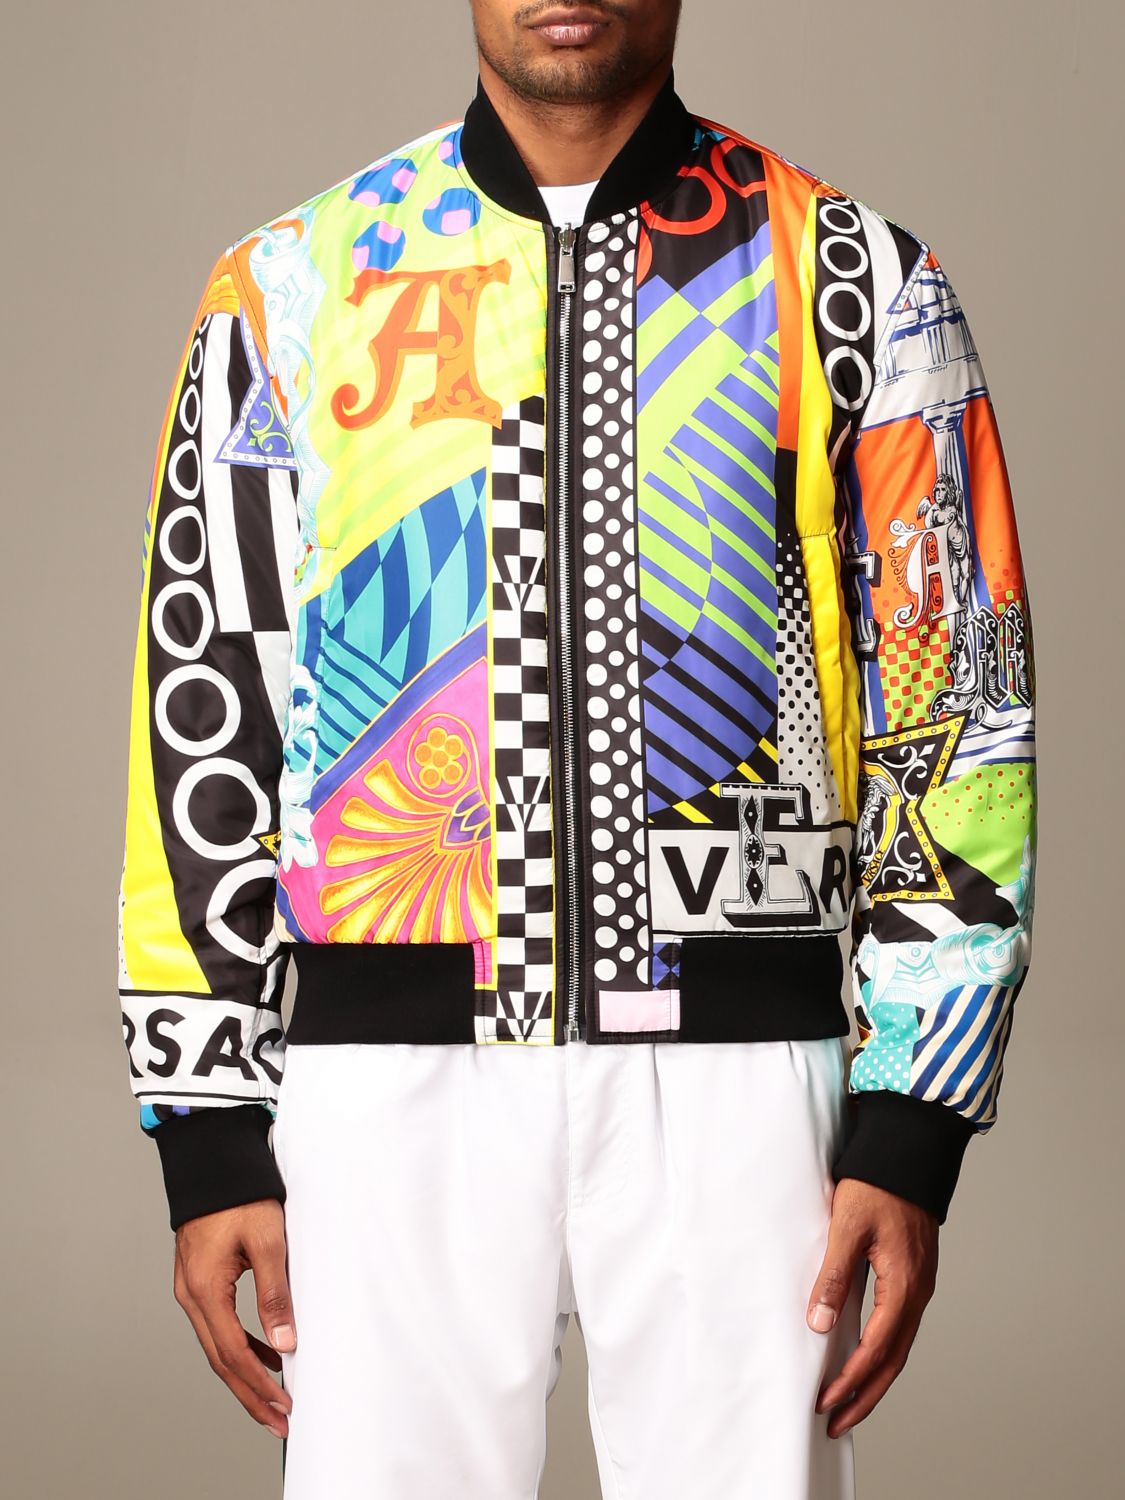 versace men's jacket